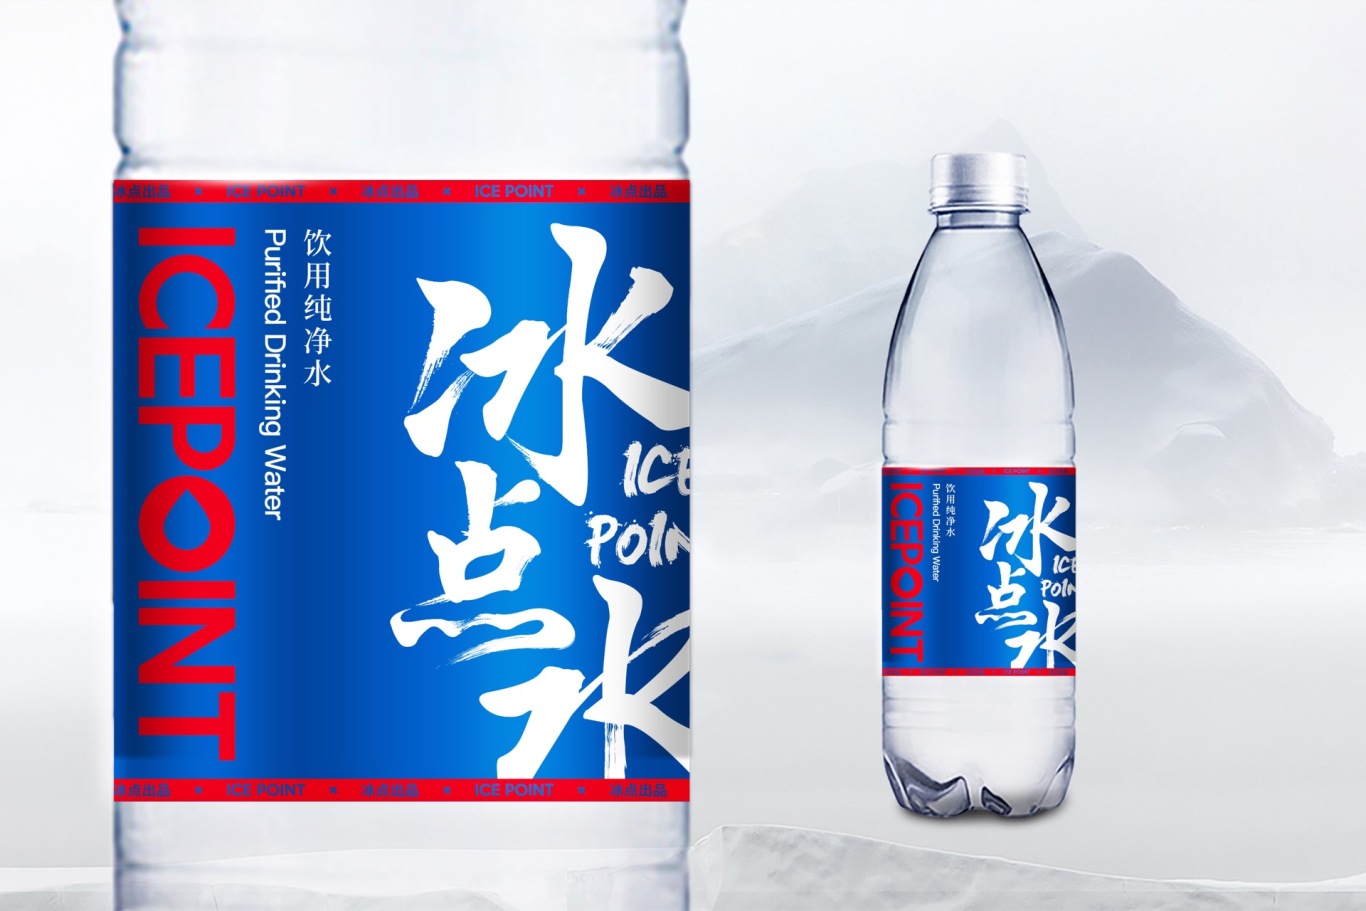 冰点水品牌LOGO包装升级设计图16